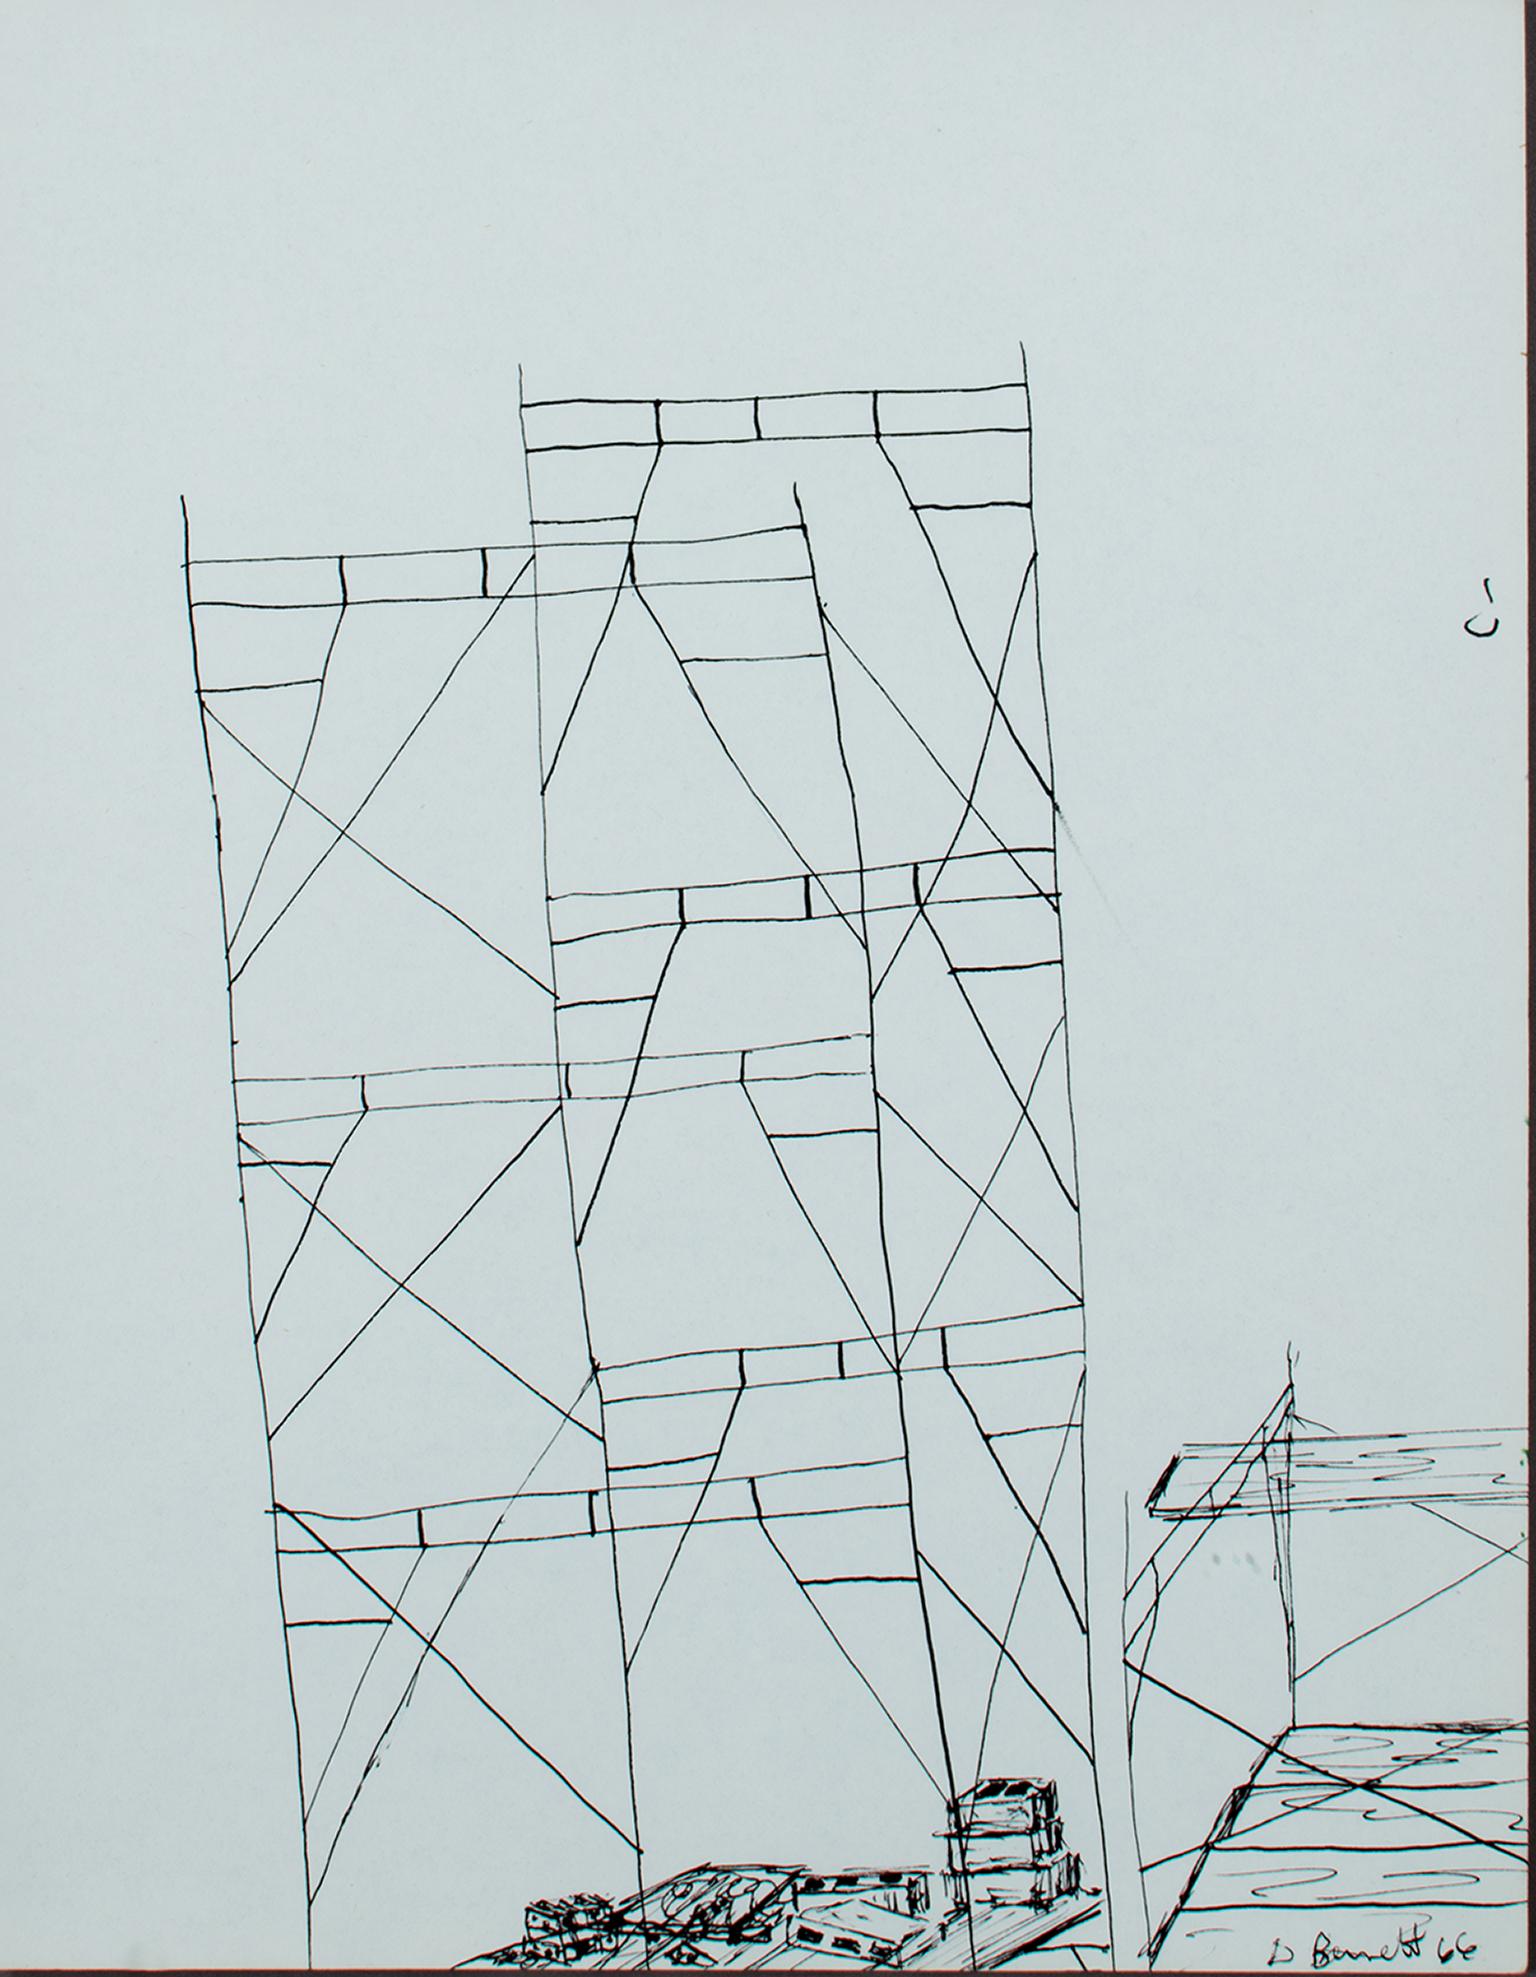 "Scaffolding" est un dessin original à l'encre de David Barnett, signé dans le coin inférieur droit. Ce dessin au trait minimal est une étude de la forme d'un échafaudage, la réduisant à ses lignes géométriques les plus élémentaires. L'effet est